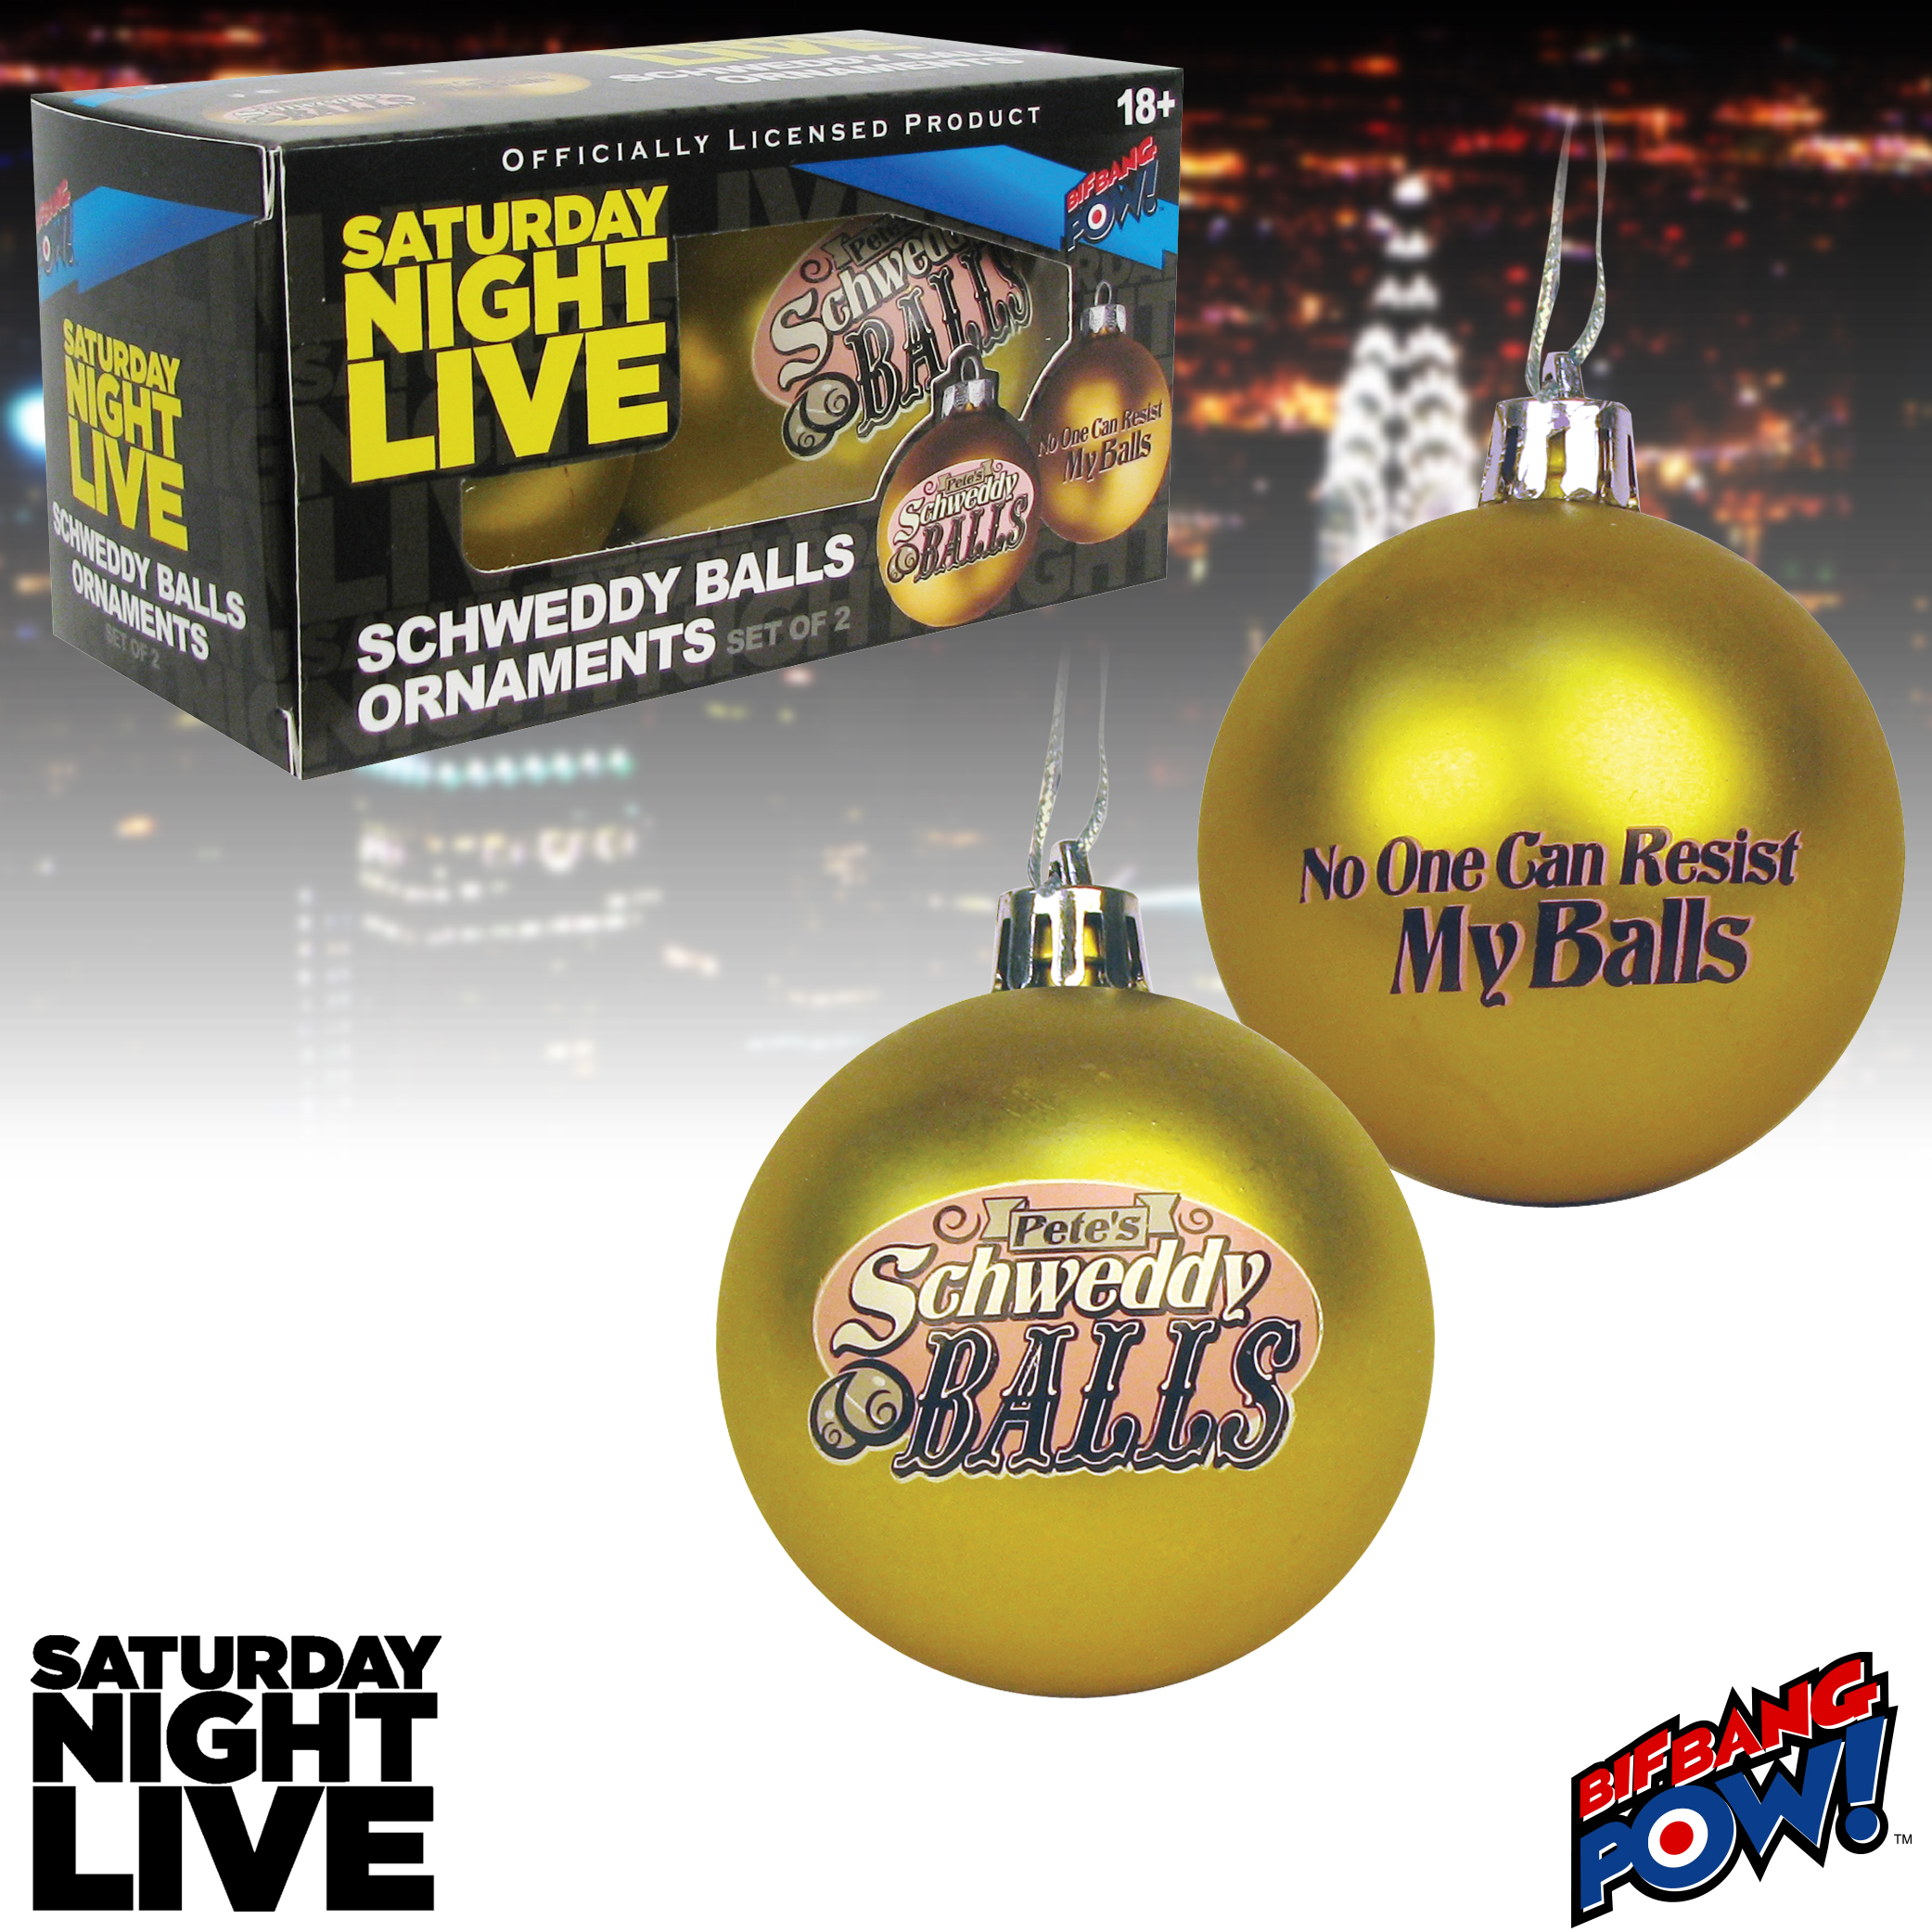 Schweddy Balls Ornaments